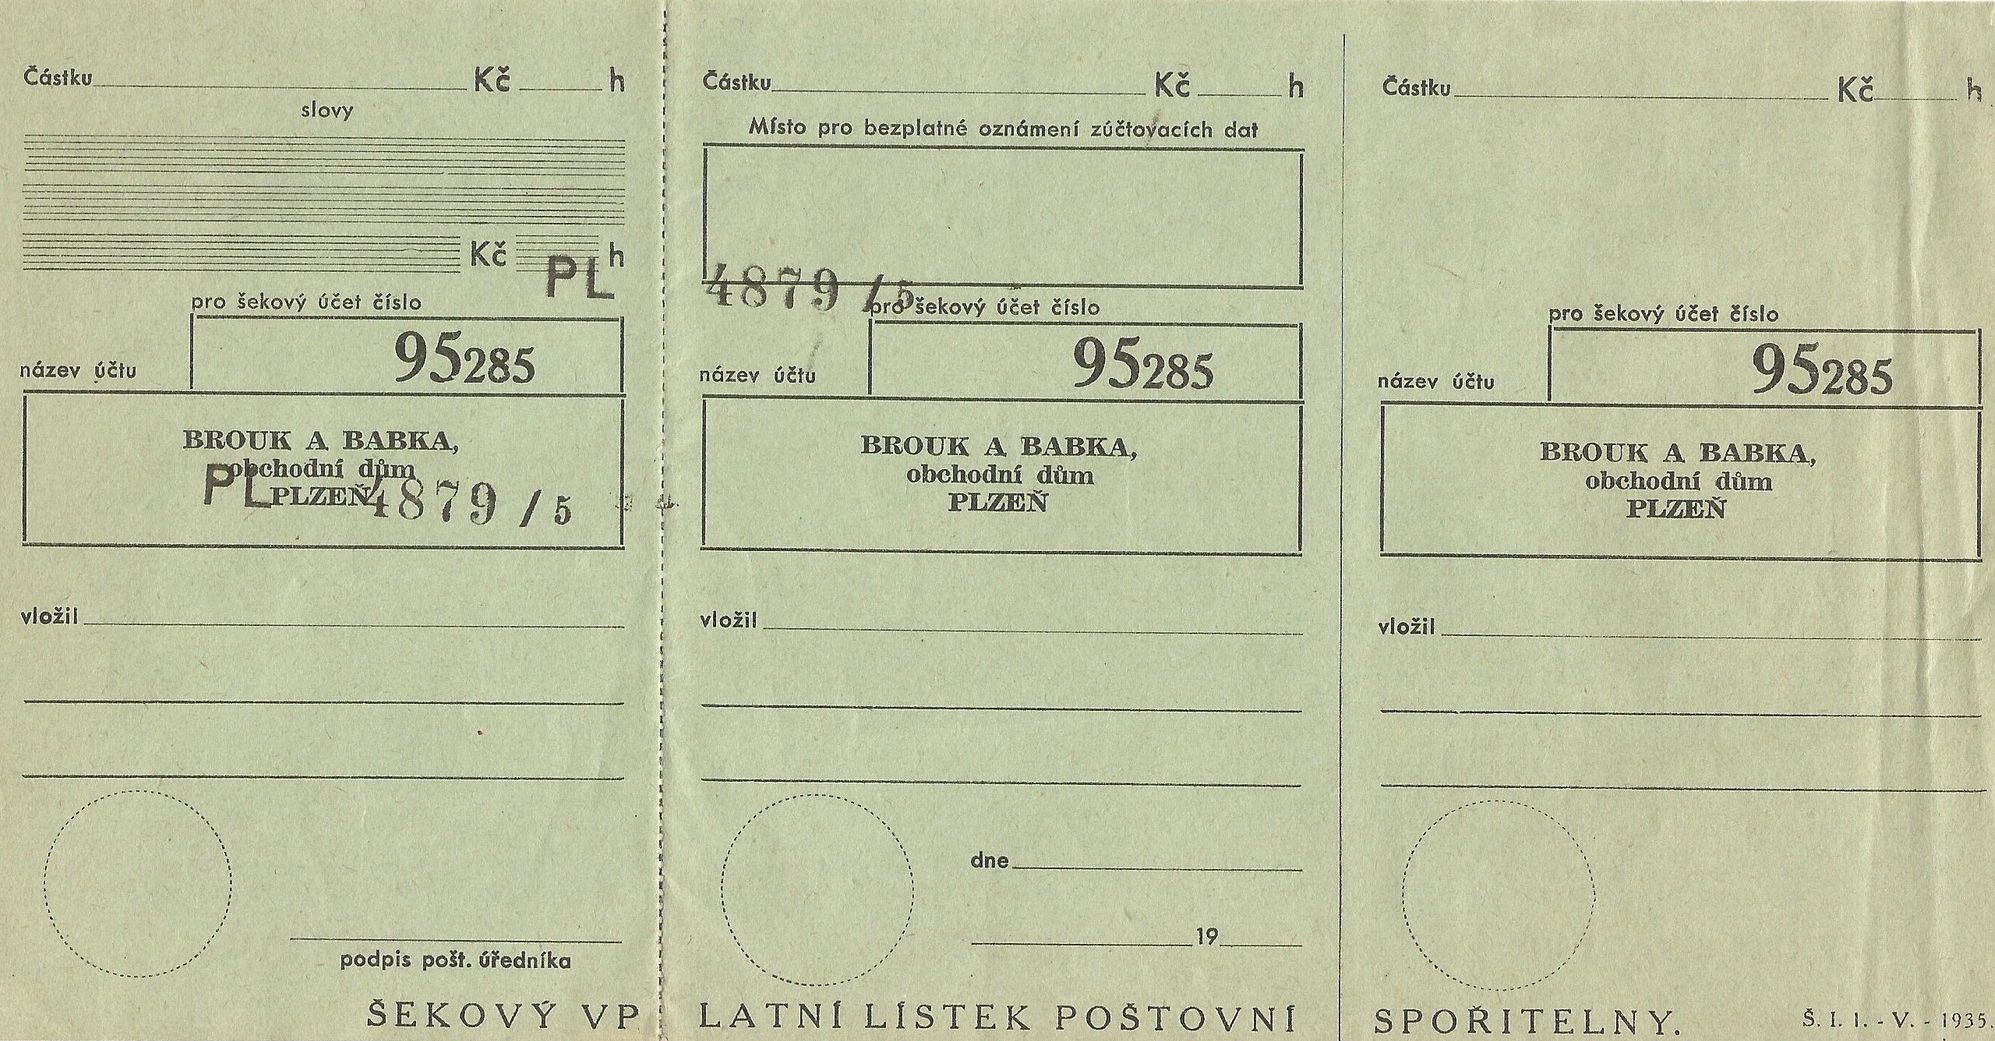 Šekový výplatní lístek Poštovní spořitelny, OD Brouk a Babka (Plzeň, po 1935)